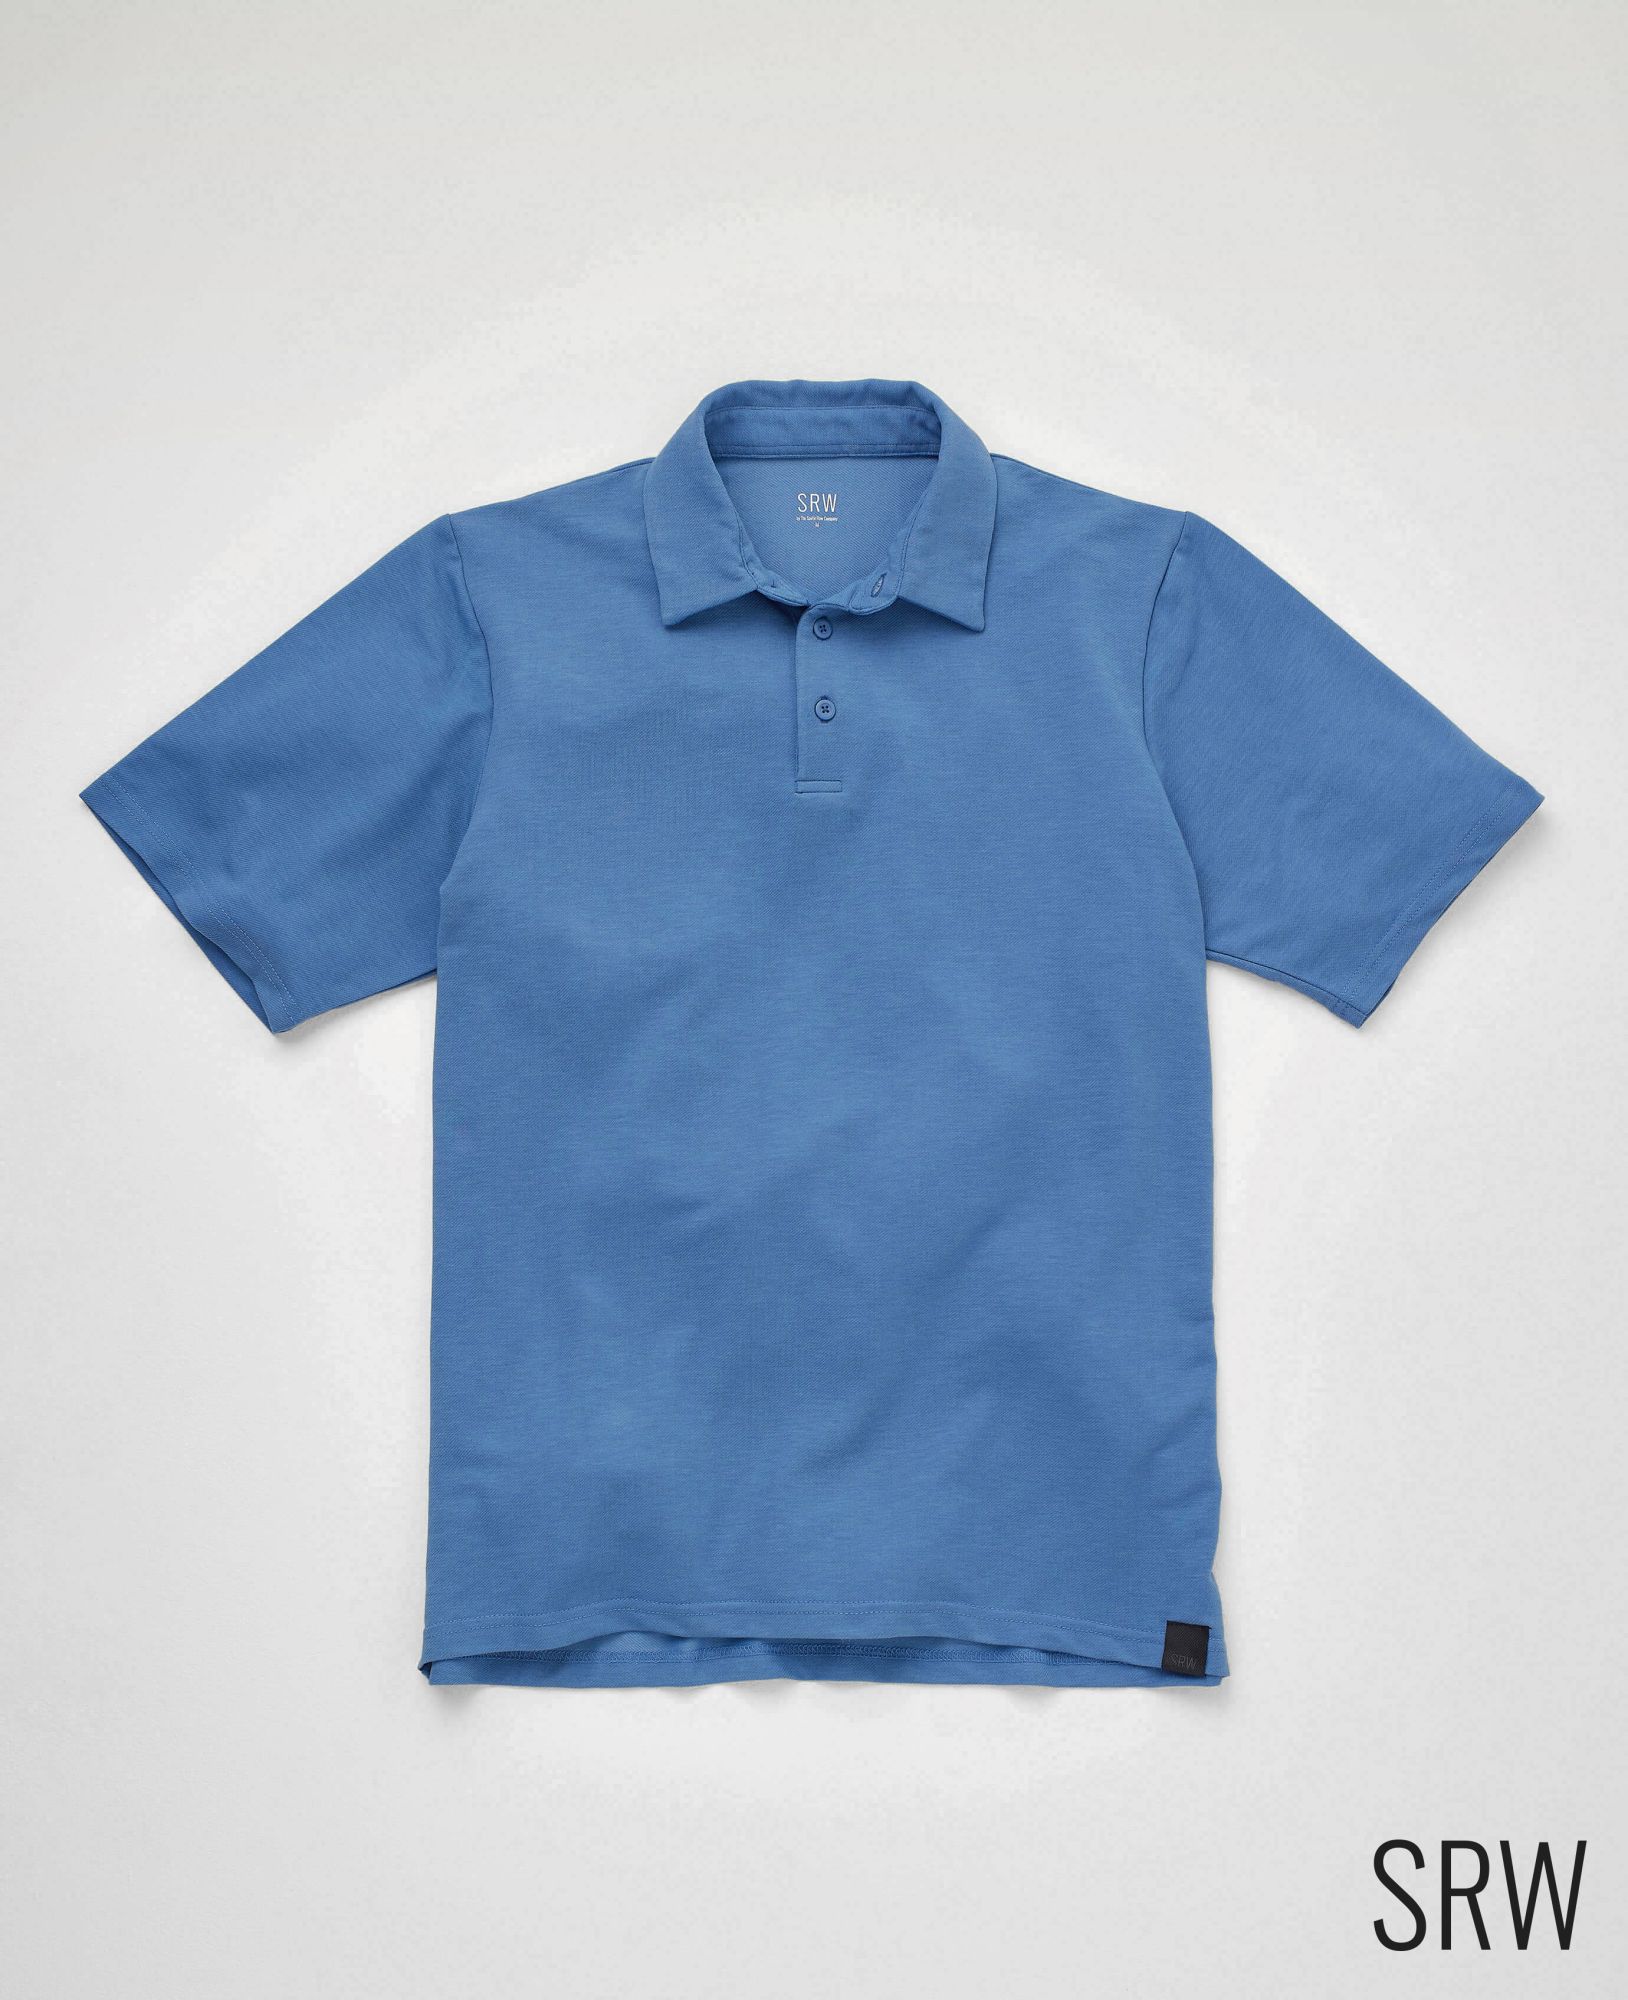 SRW Active Non-Iron Denim Blue Short Sleeve Polo Shirt XL